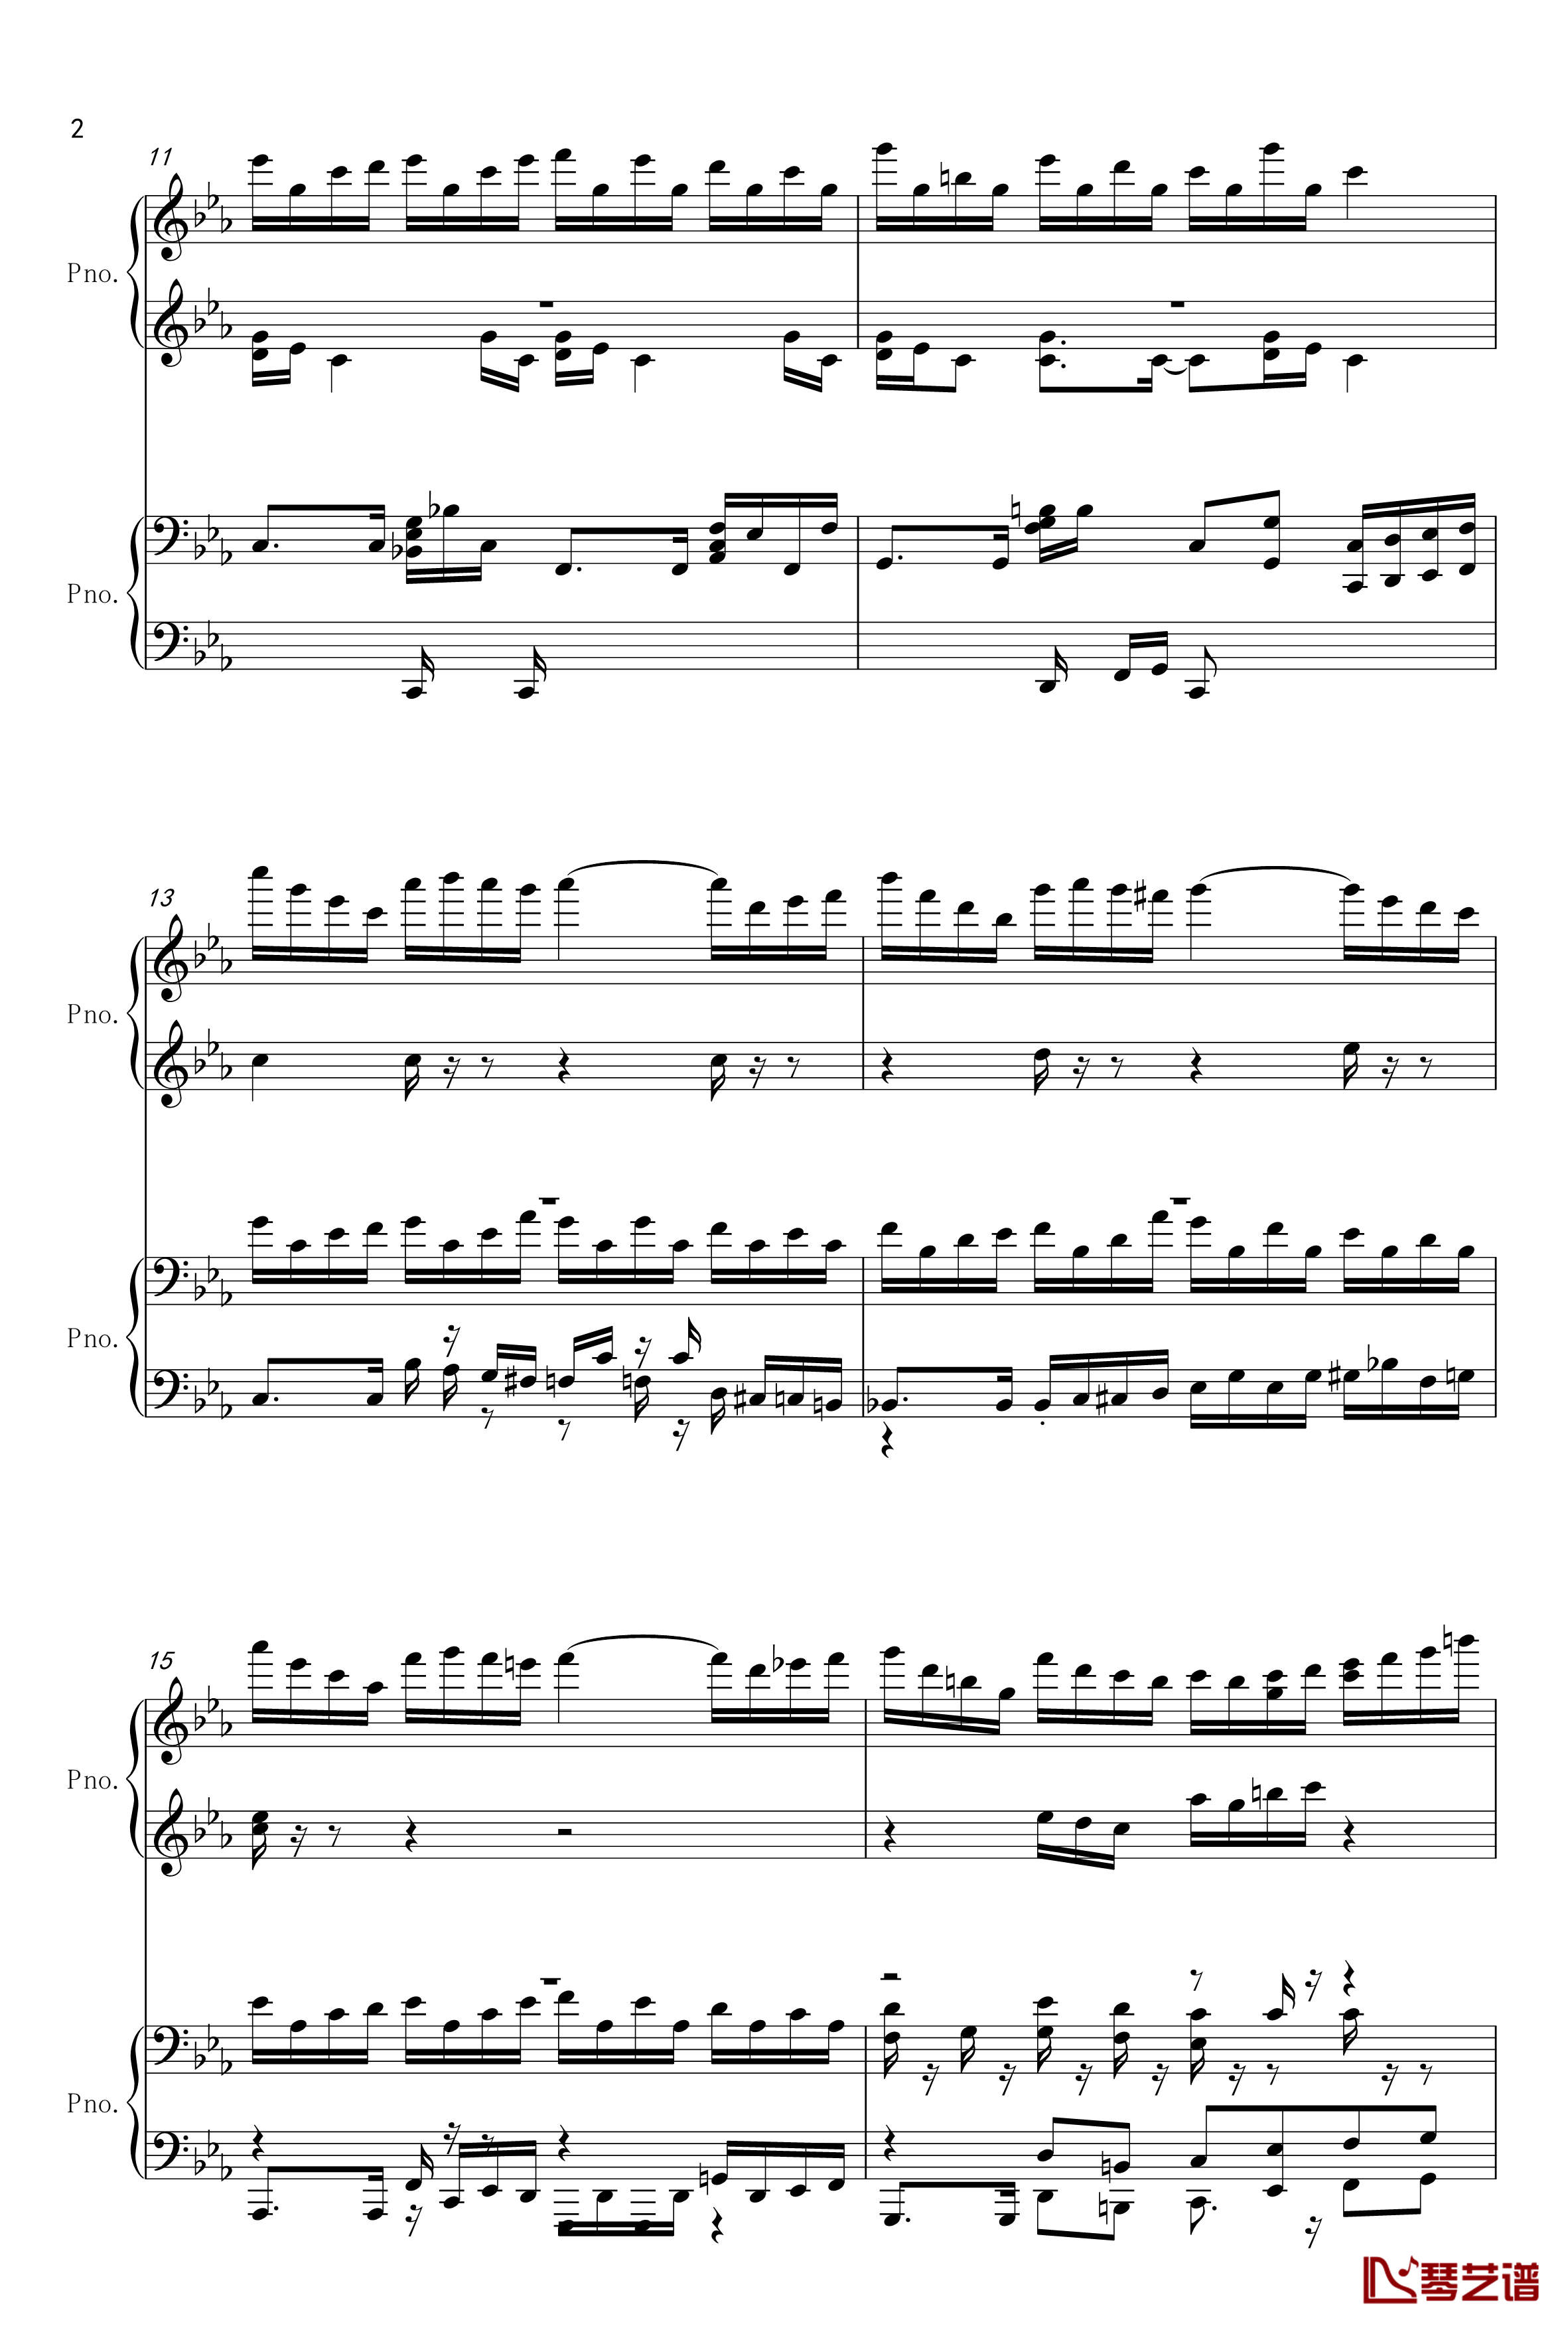 克罗地亚狂想曲-四手联弹钢琴谱-单钢琴-马克西姆-Maksim·Mrvica2